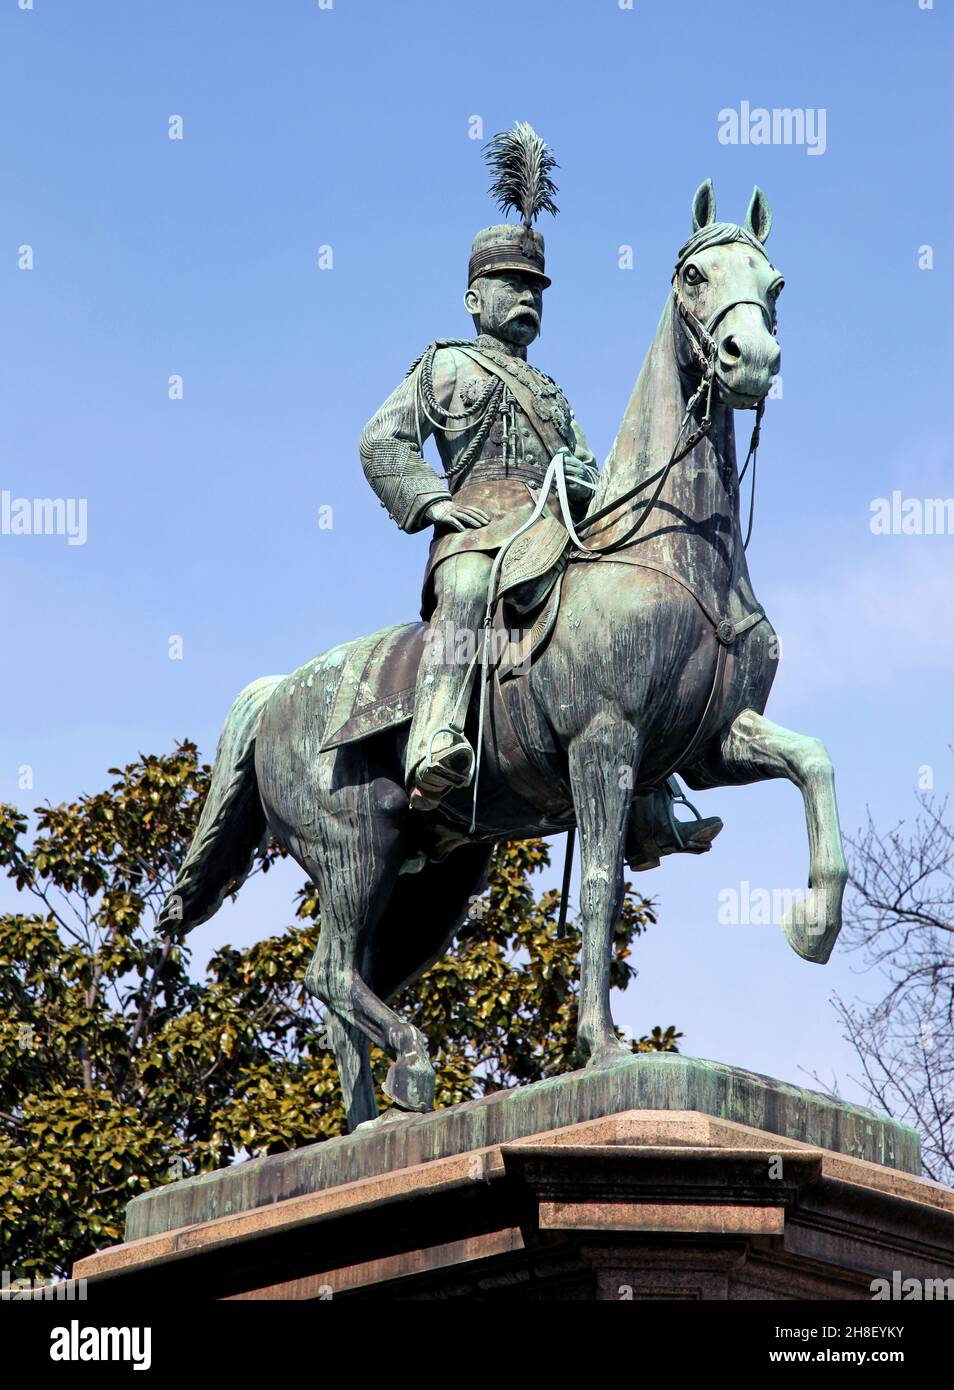 Die bronzene Reiterstatue des Prinzen Komatsu Akihito im Ueno Park, Tokio. Er war ein japanischer Karriereoffizier in der kaiserlichen japanischen Armee. Stockfoto